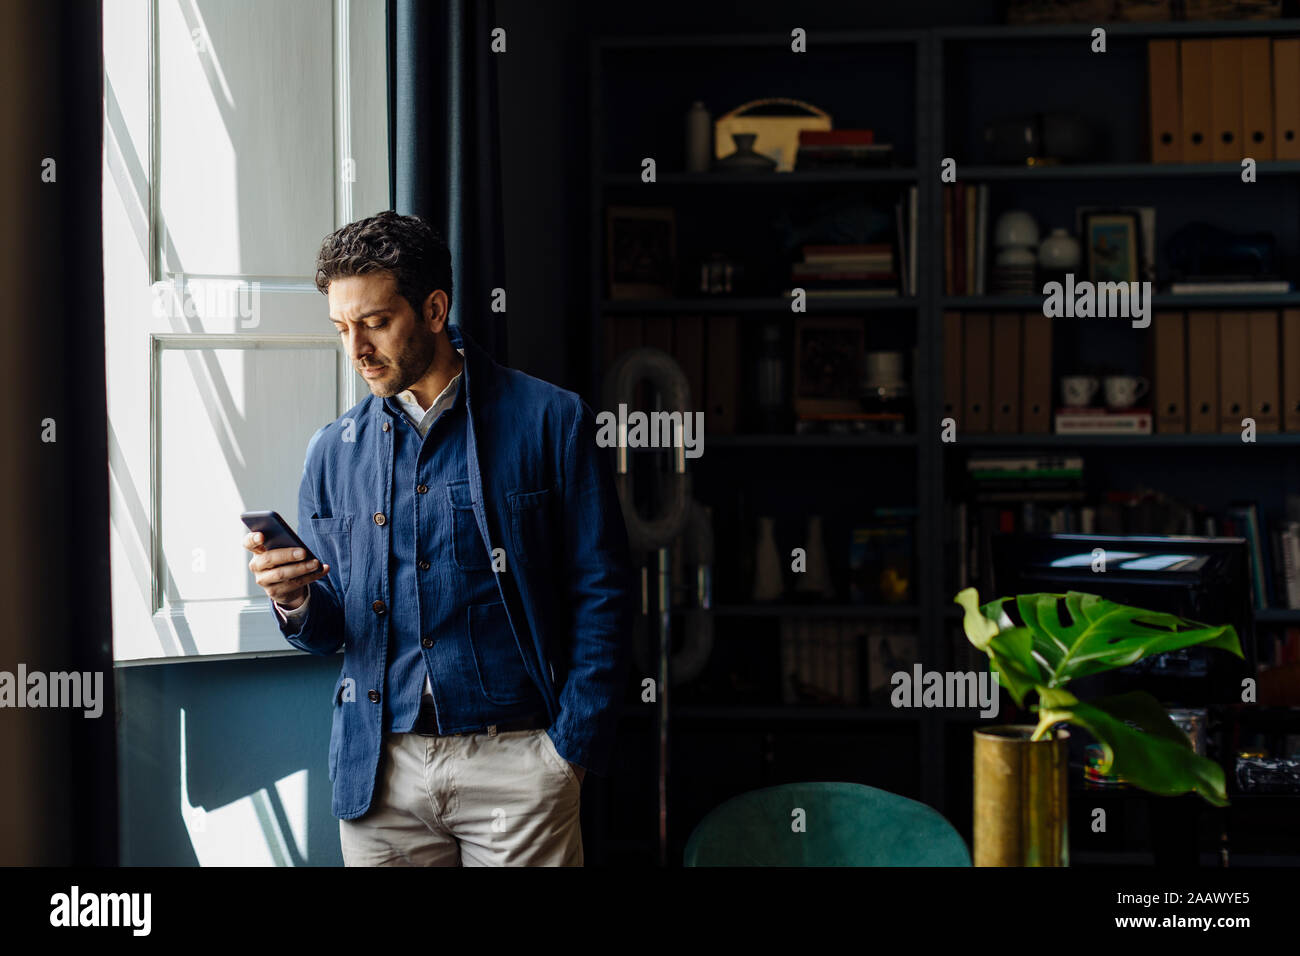 Homme debout dans son bureau, using smartphone Banque D'Images